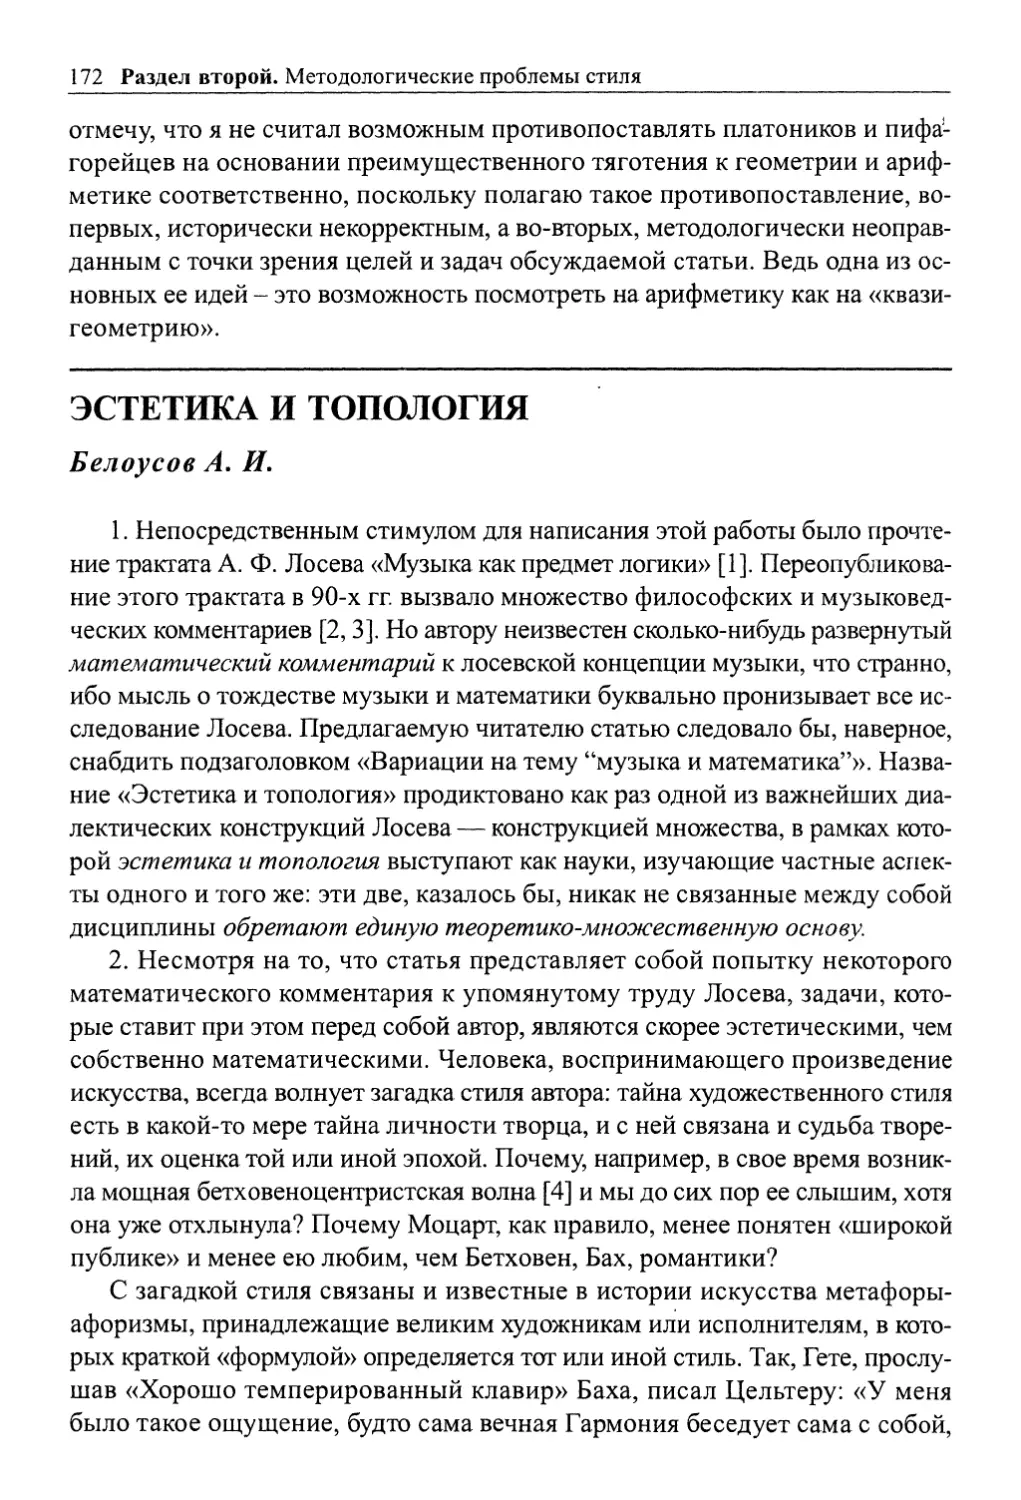 Белоусов А. И. Эстетика и топология